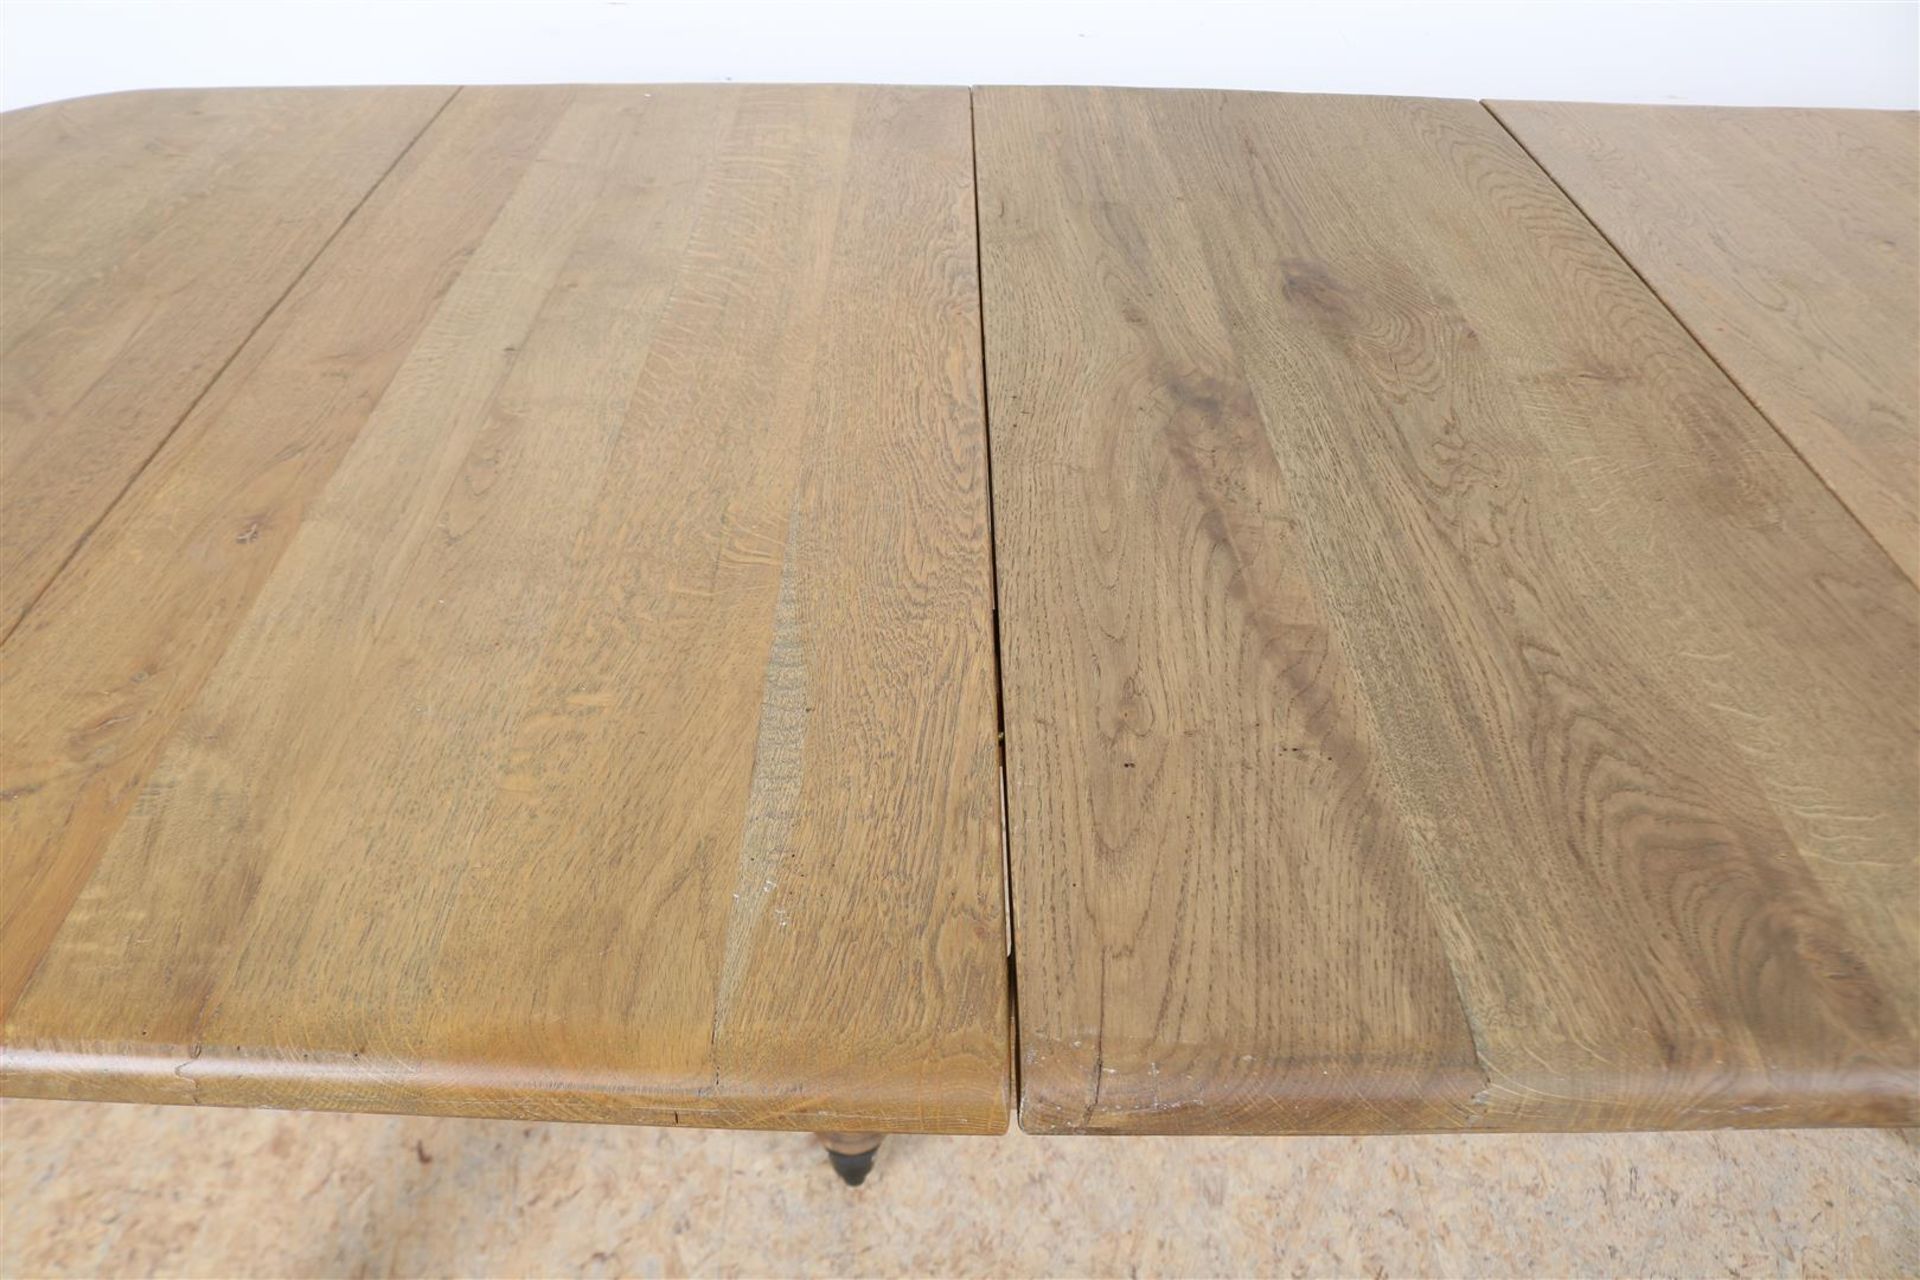 Oak wings table on turned legs ending in brass wheels, 78 x 162 x 98 cm. 2 oak intermediate leaves - Image 5 of 6